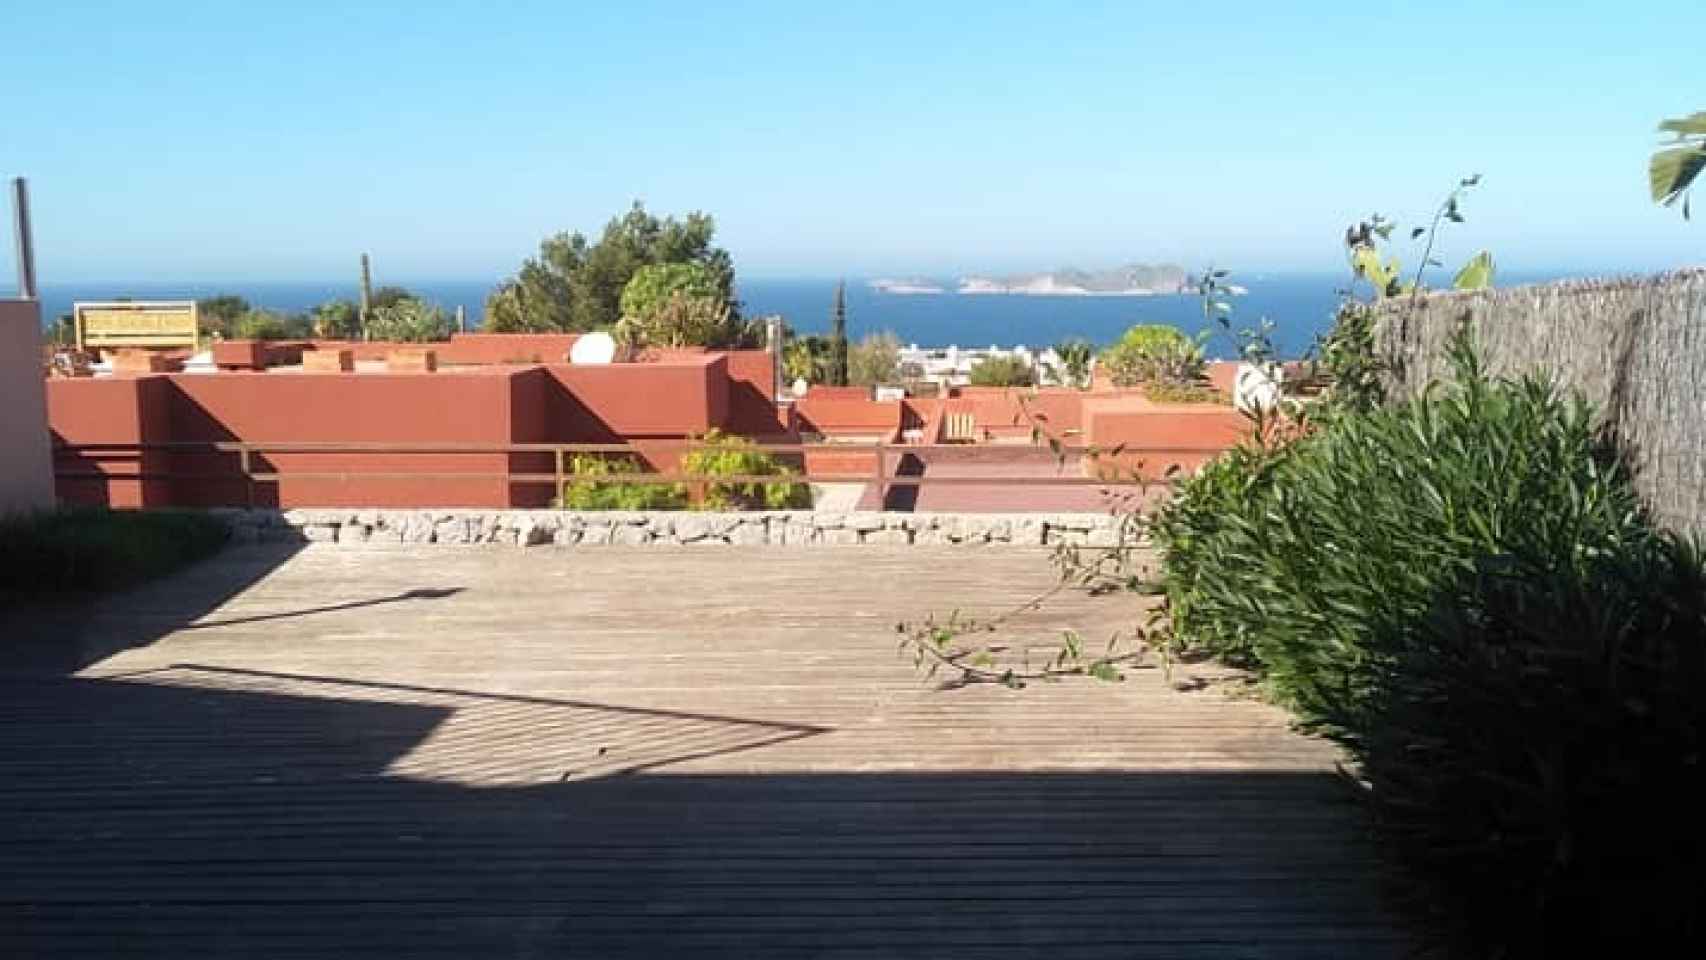 Vistas desde la terraza del chalet de San Josep (Ibiza).